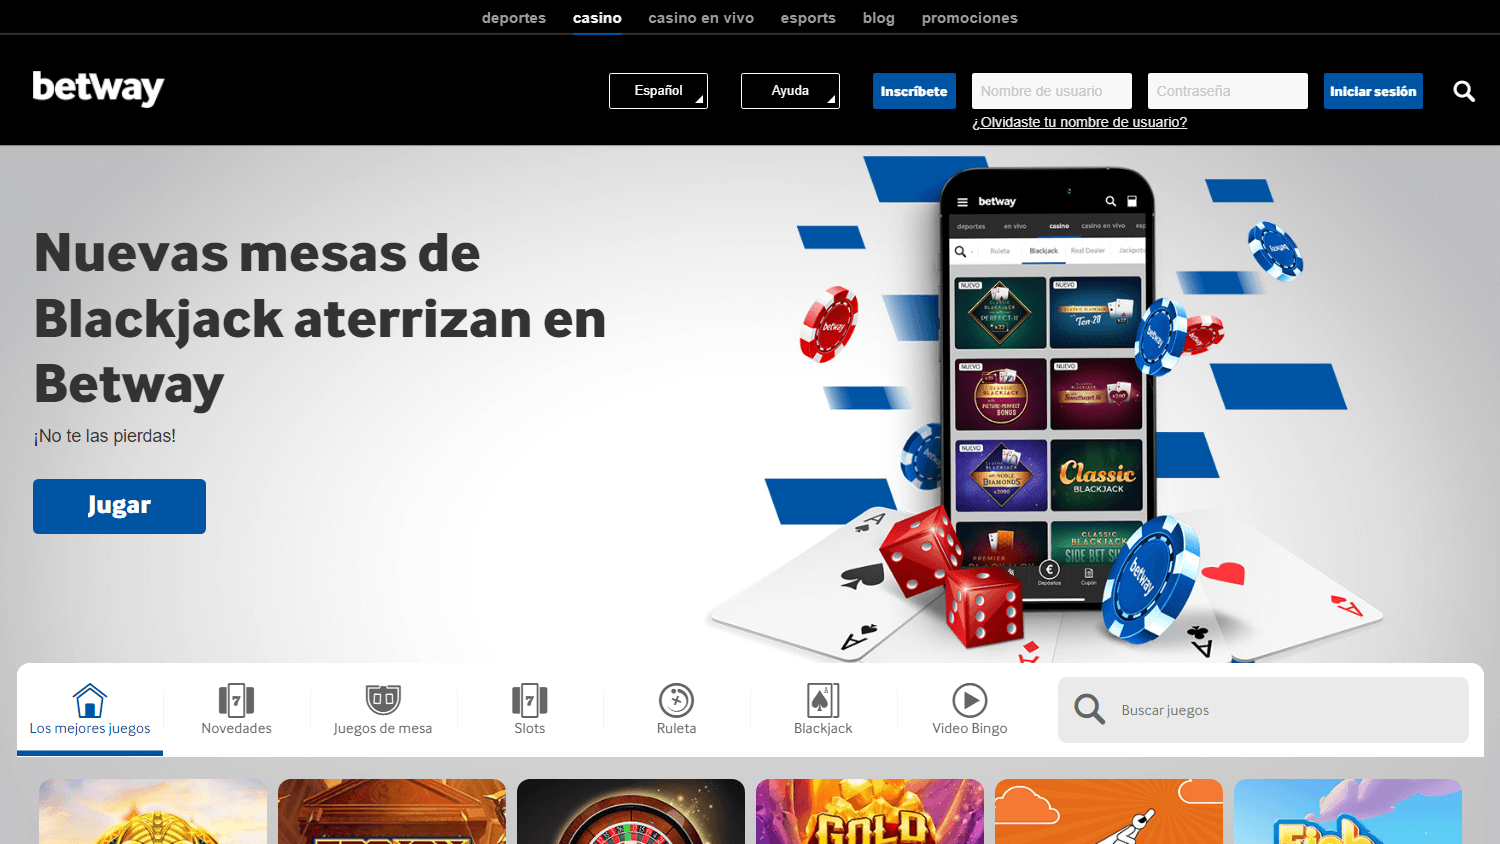 betway_casino_es_homepage_desktop